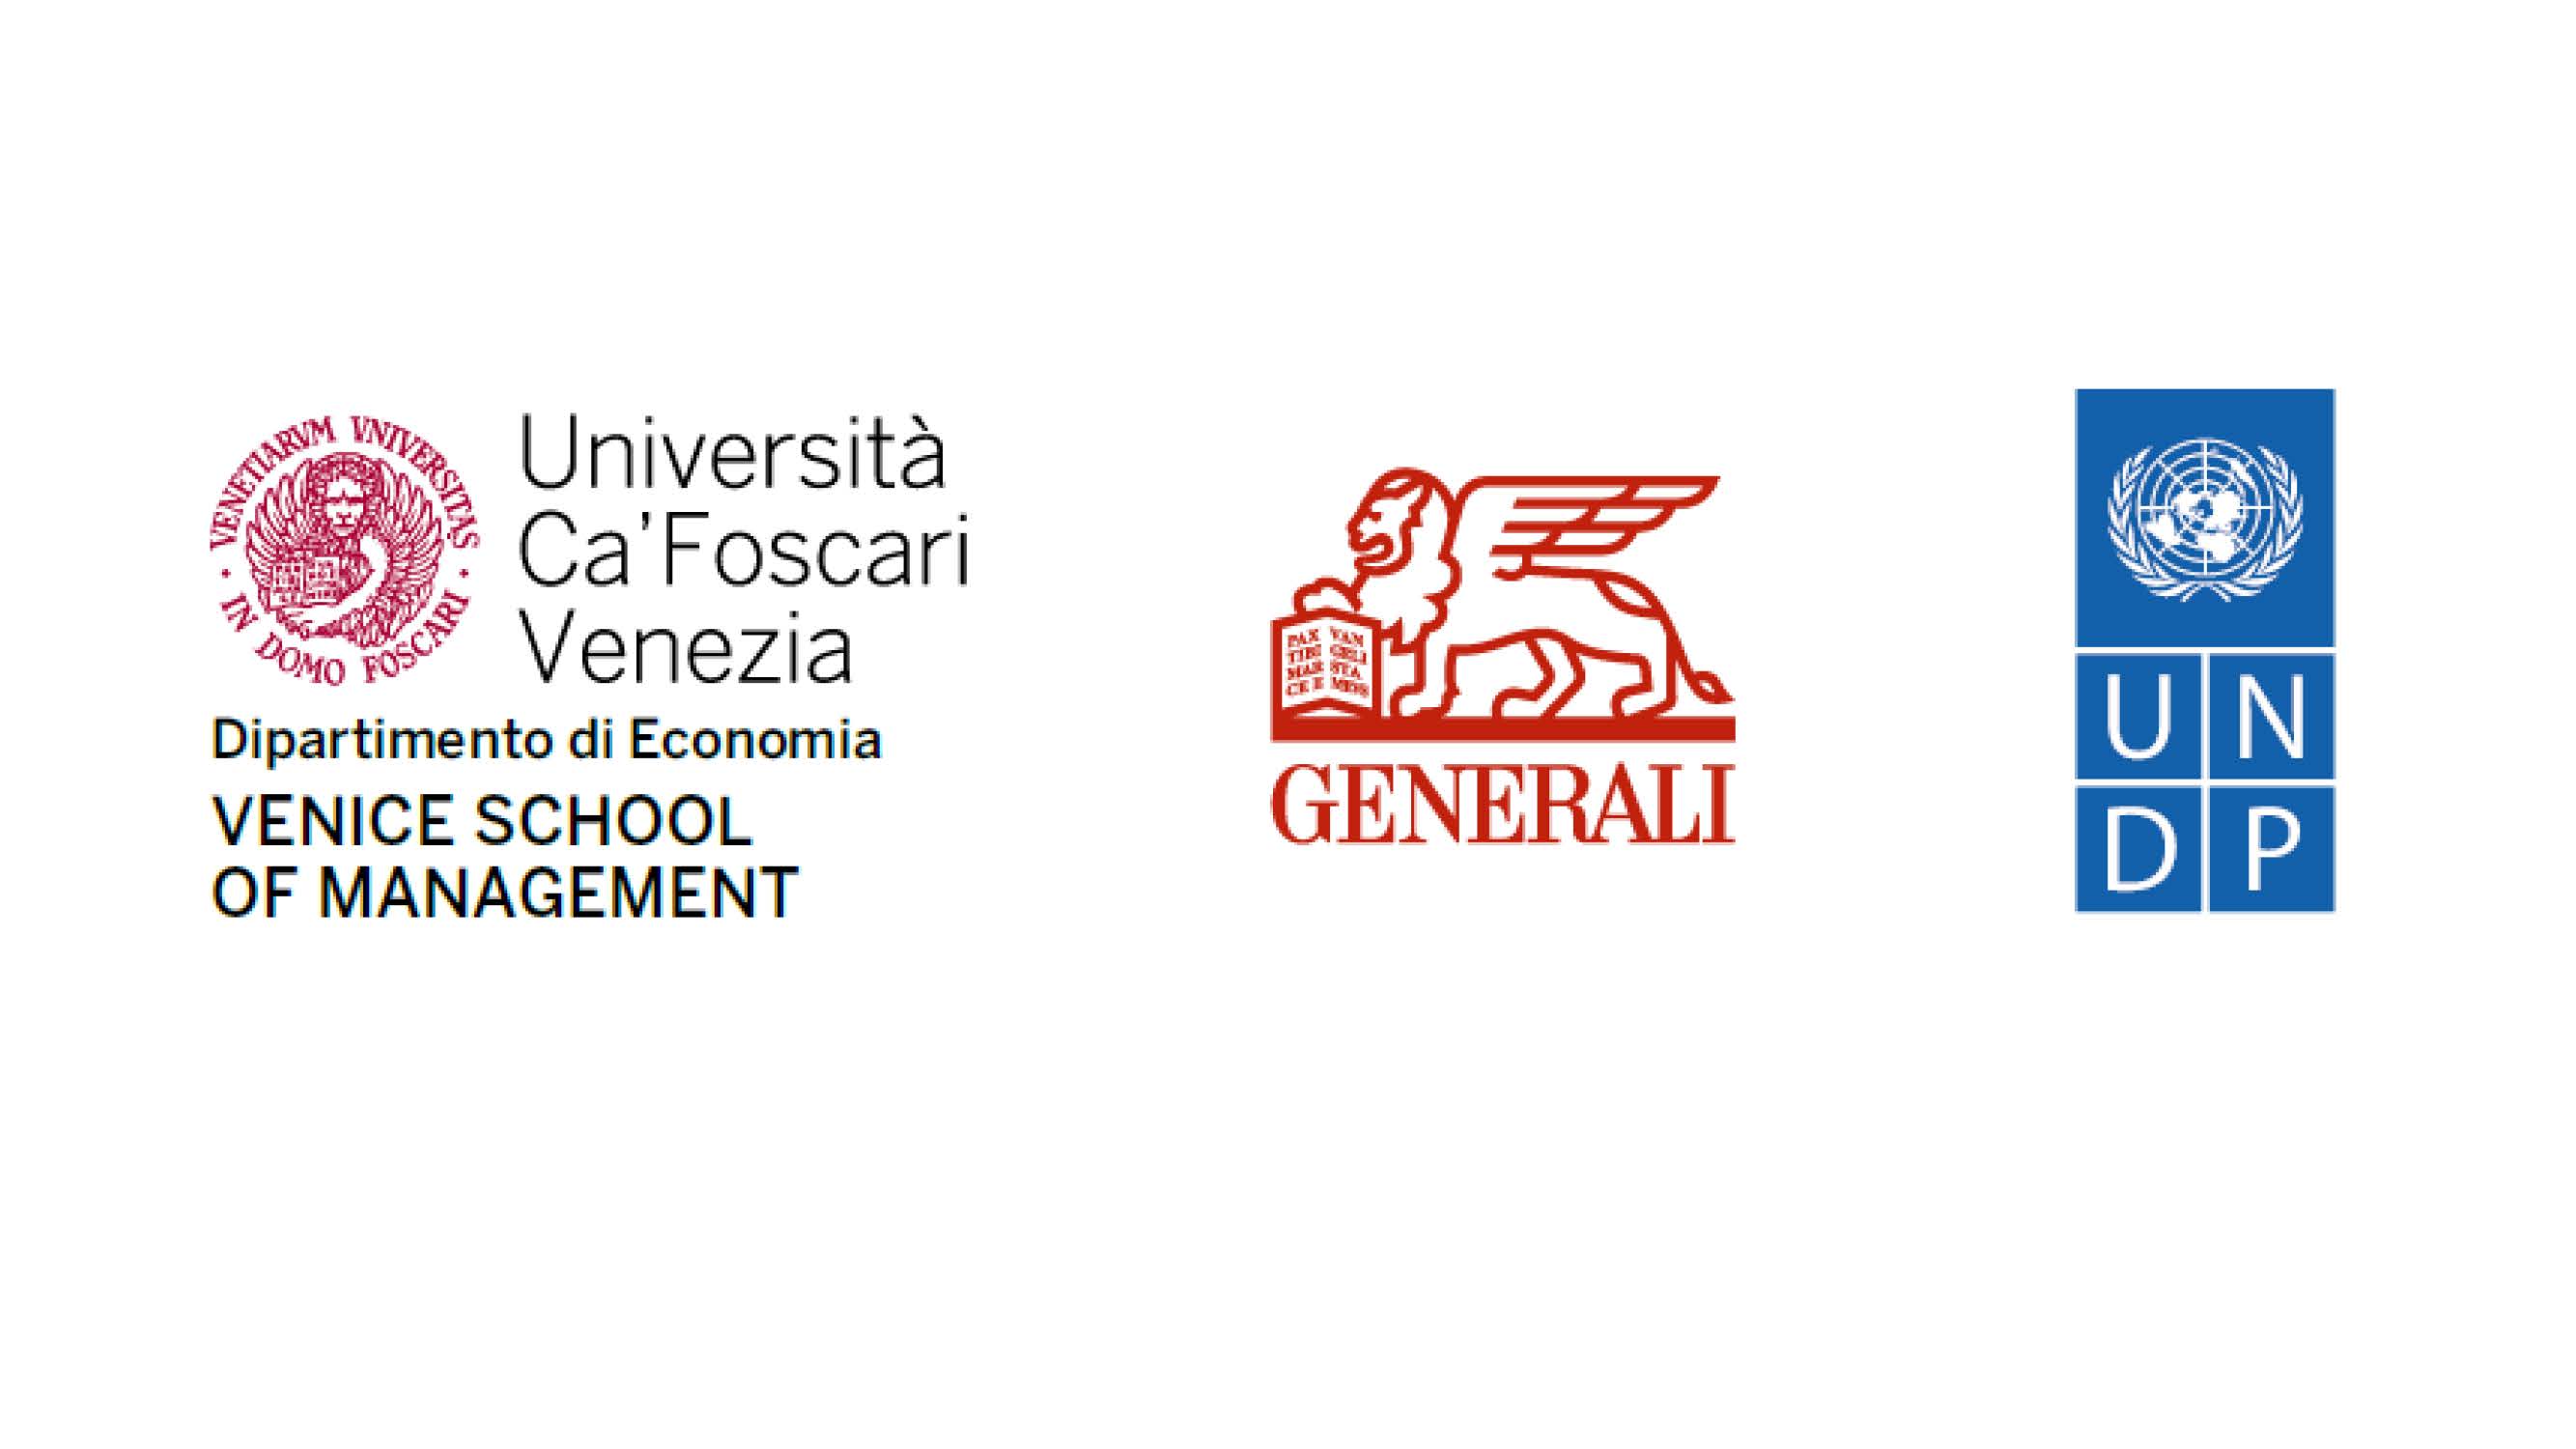 Progetto Generali e United Nations Development Programme / Generali and United Nations Development Programme Project